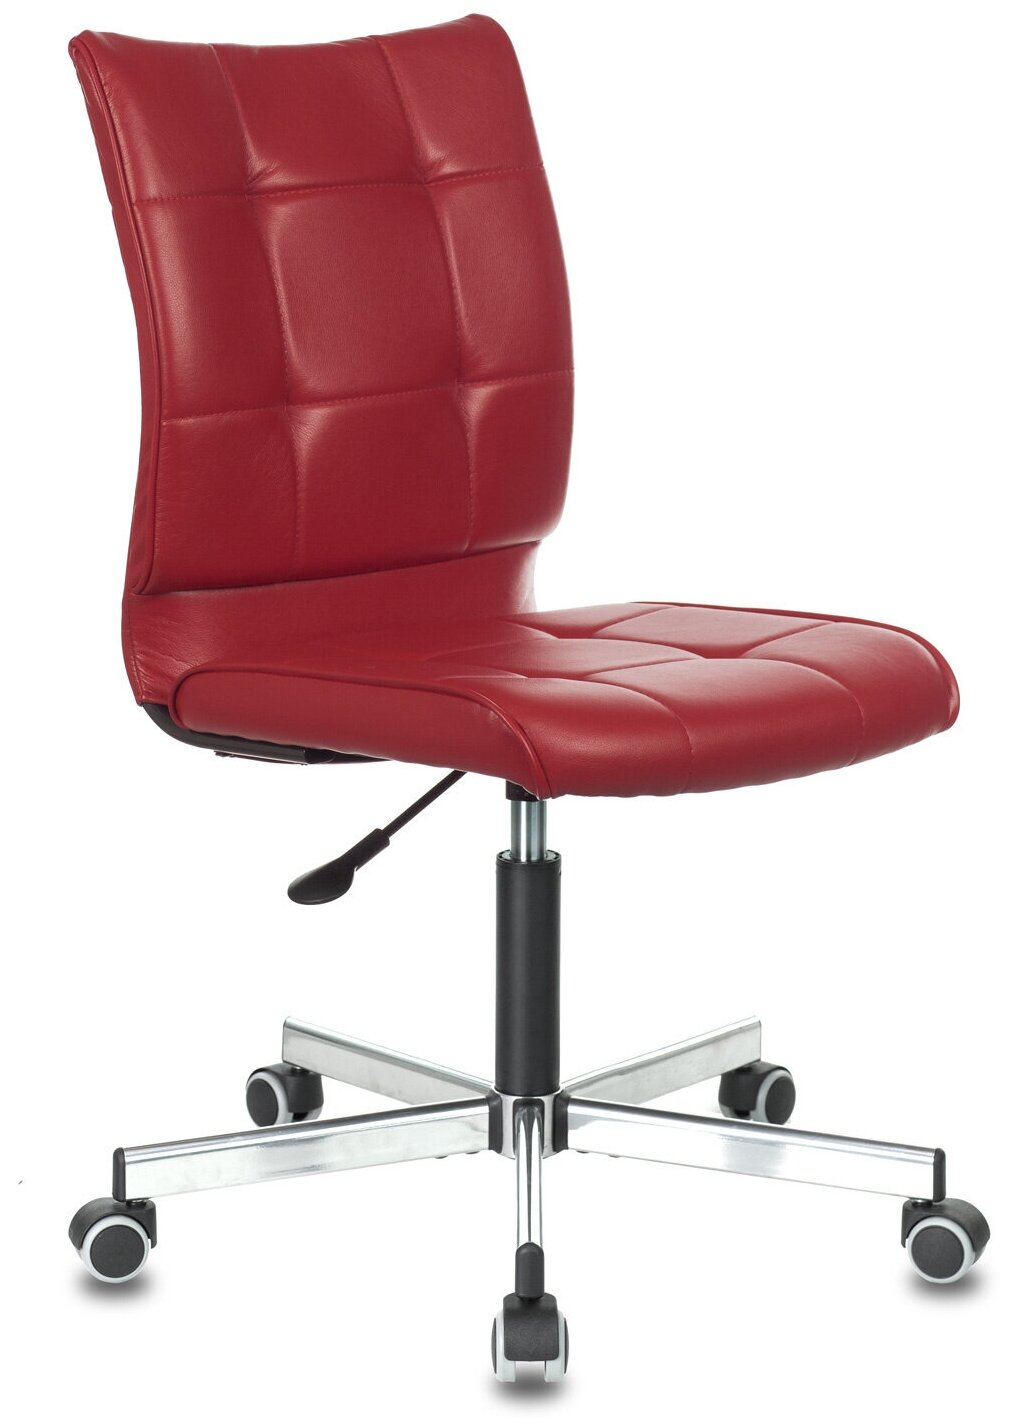 Кресло компьютерное CH-330M красный, экокожа / Кресло для офиса, детской комнаты, для школьника, ребенка